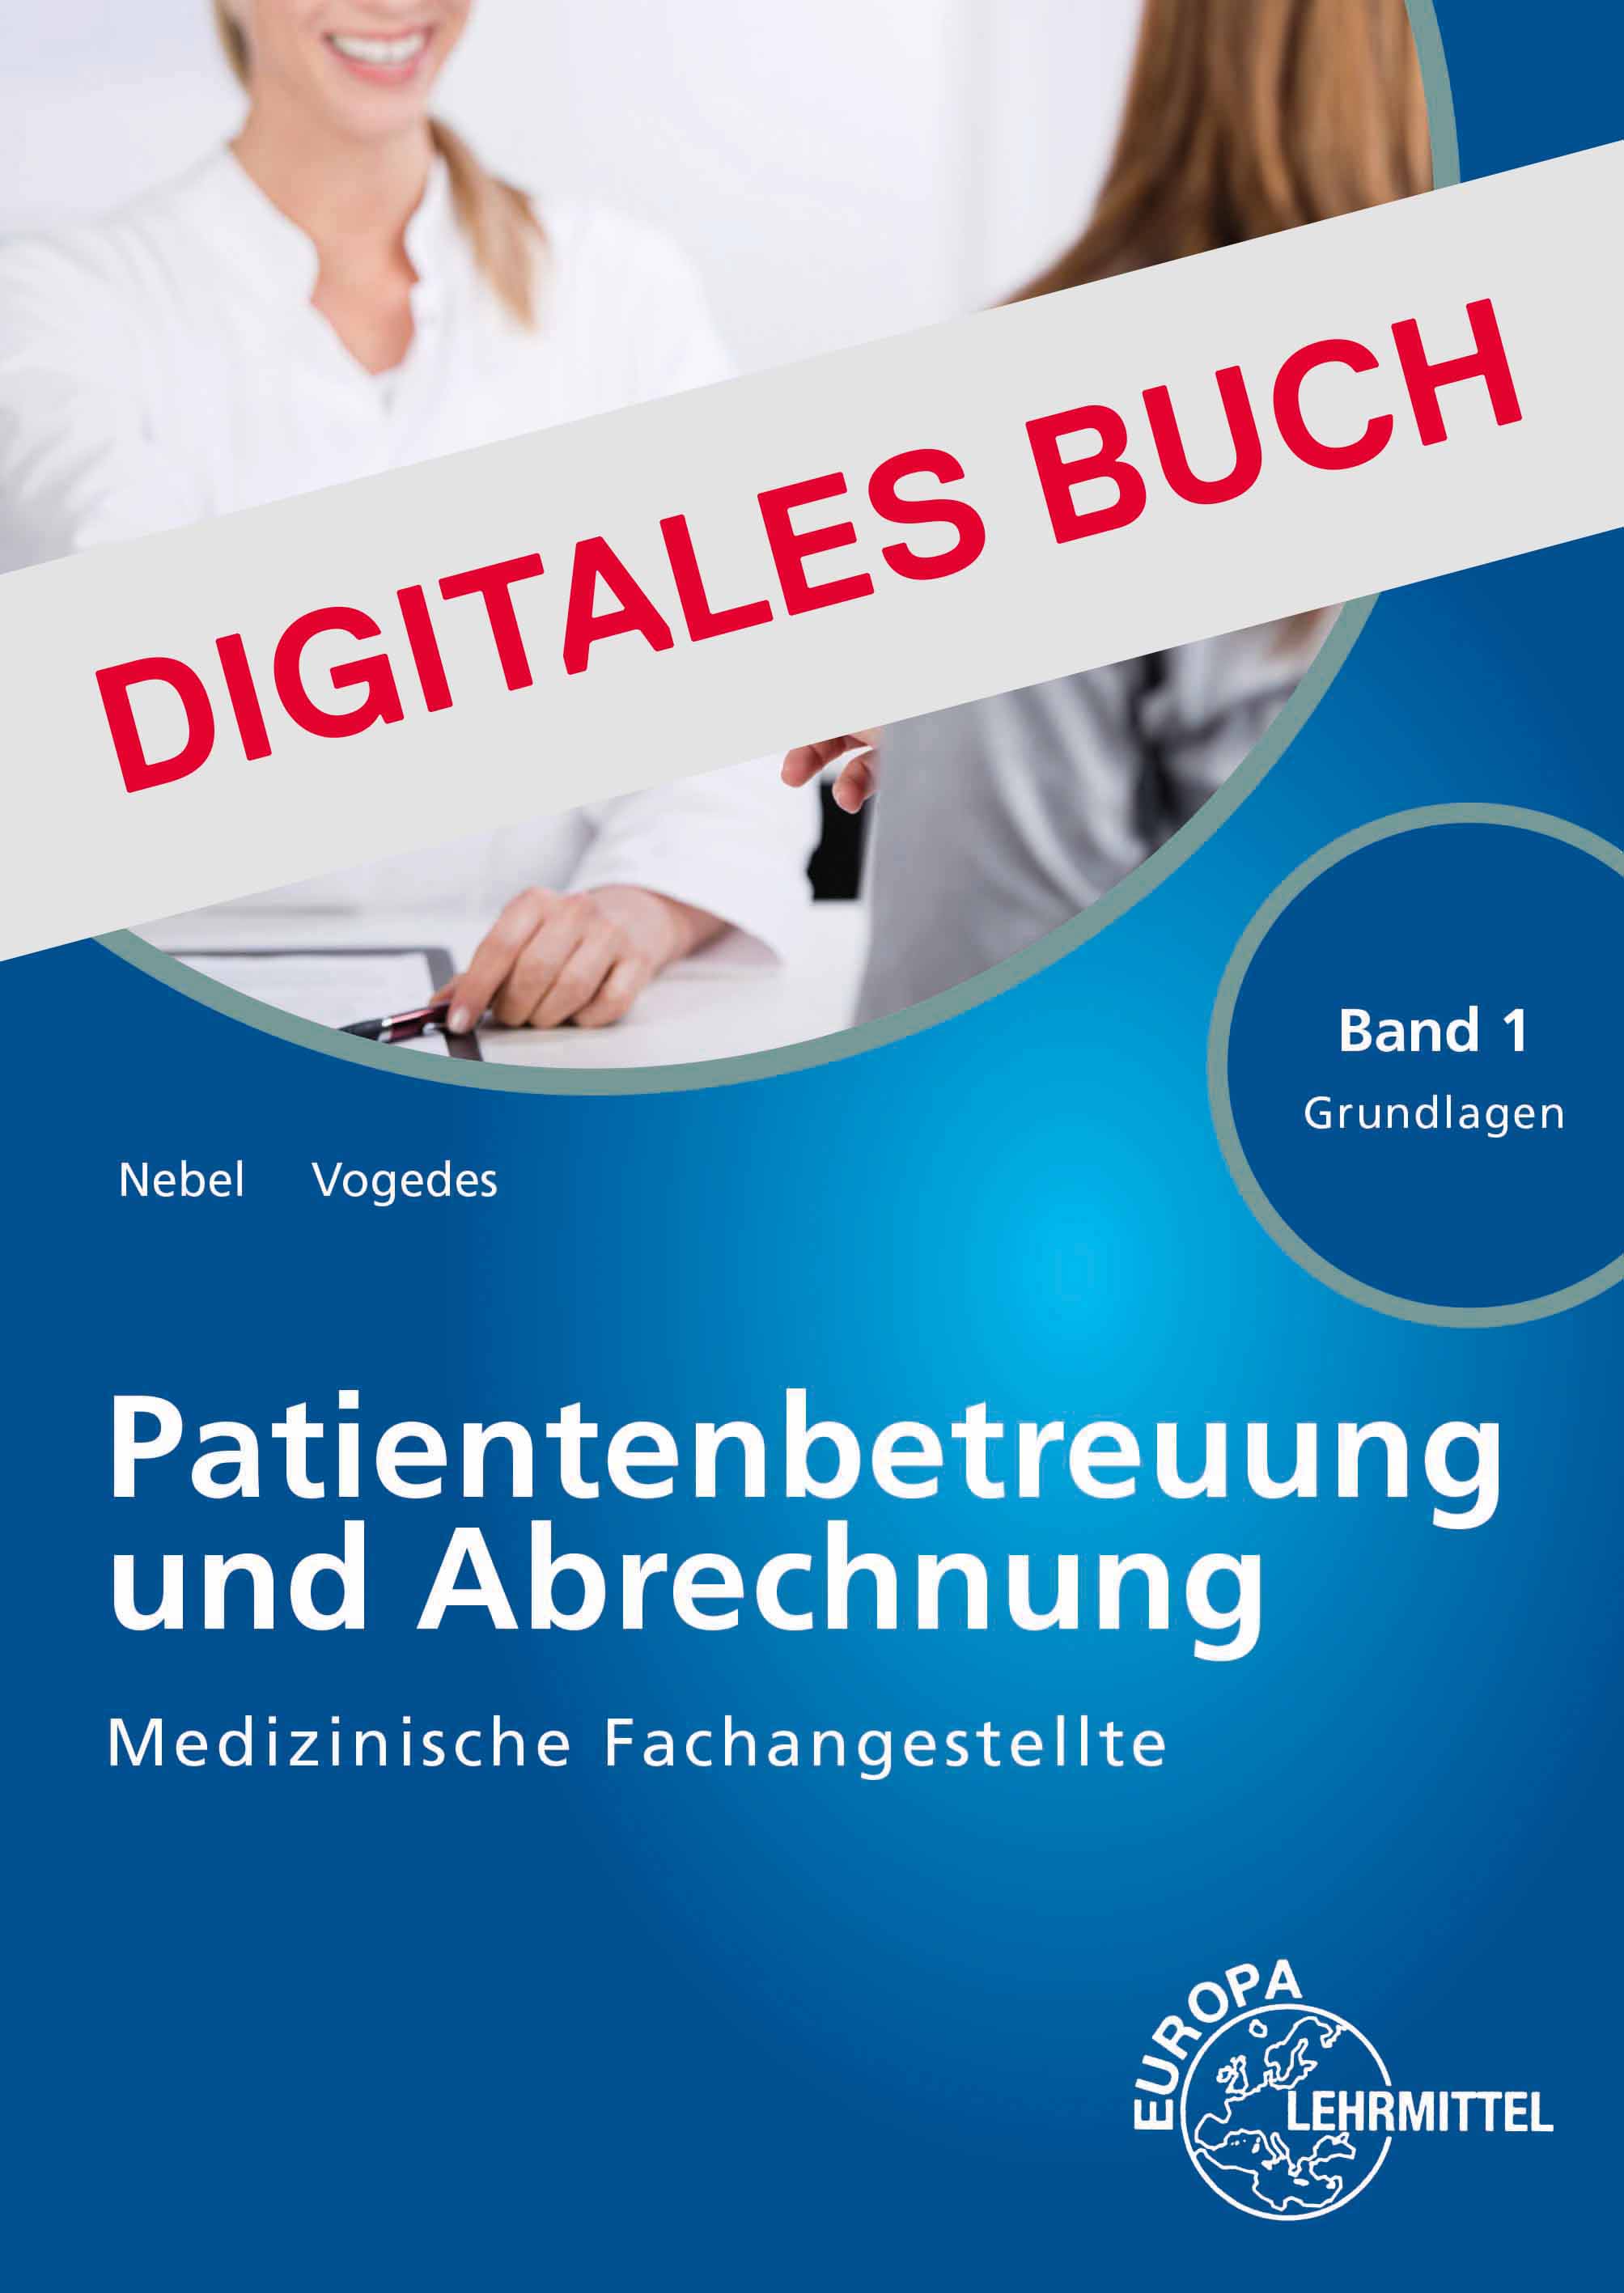 MFA Patientenbetreuung und Abrechnung Band 1 Grundlagen - Digitales Buch